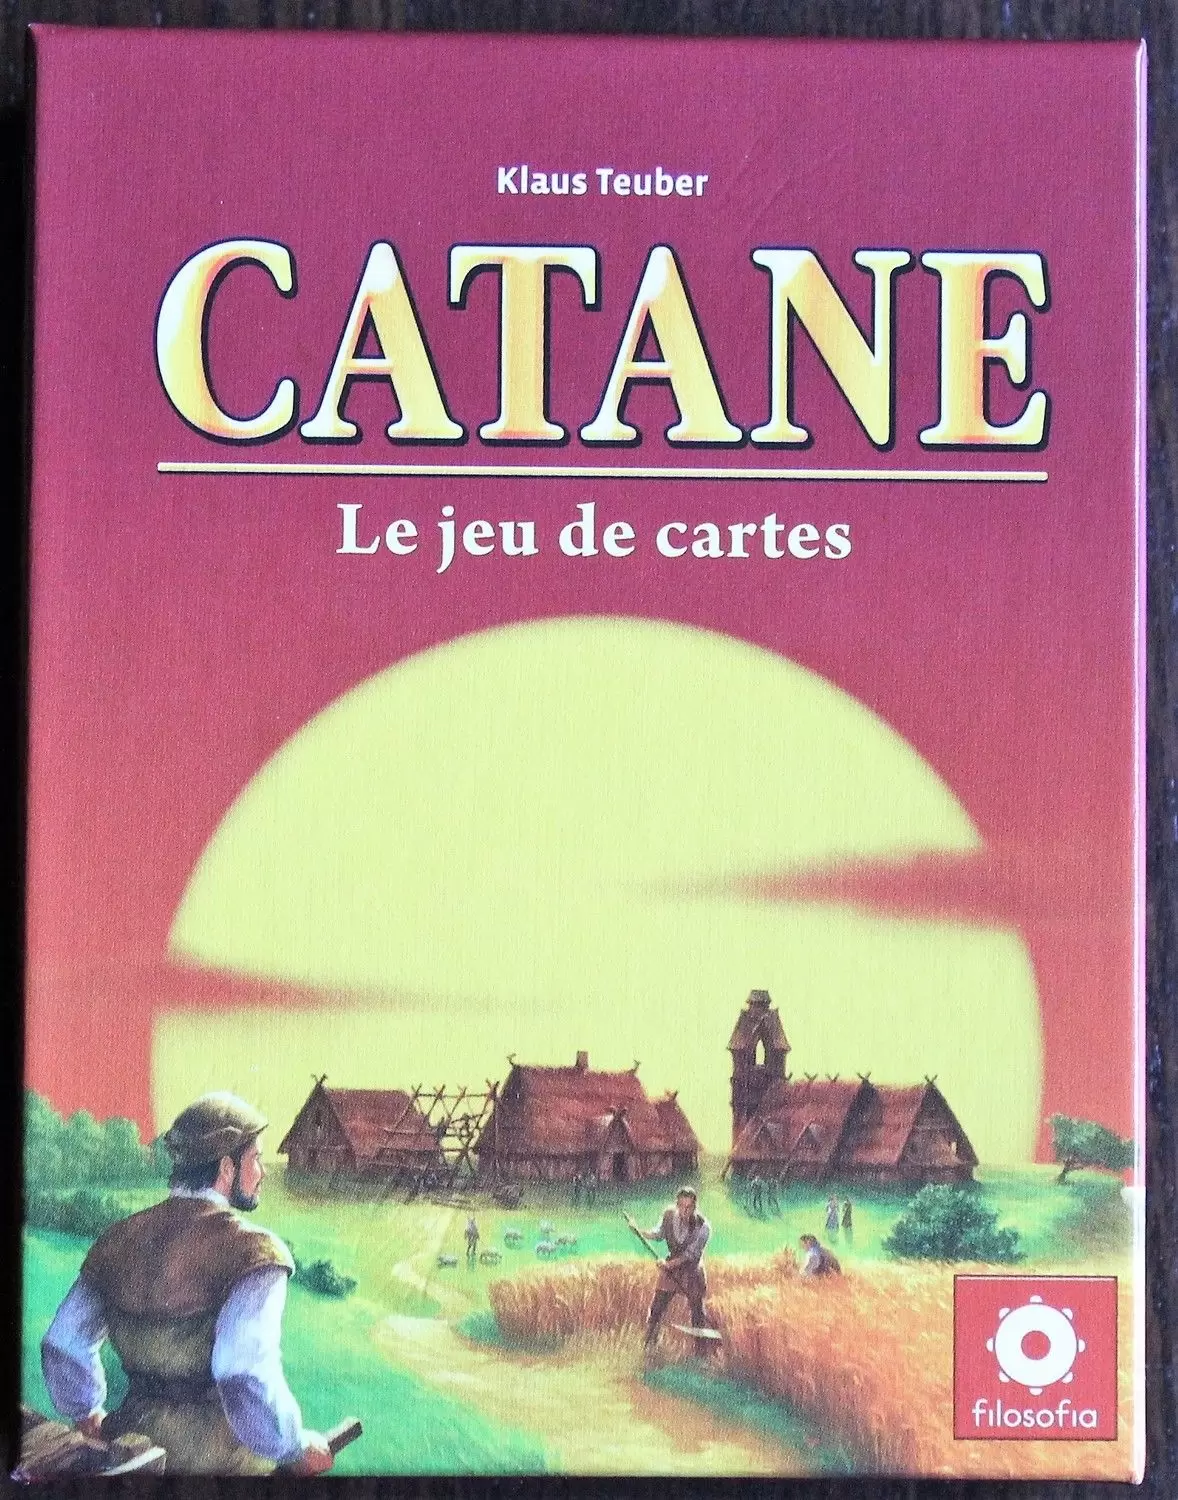 Catan - Catane ; le jeu de cartes